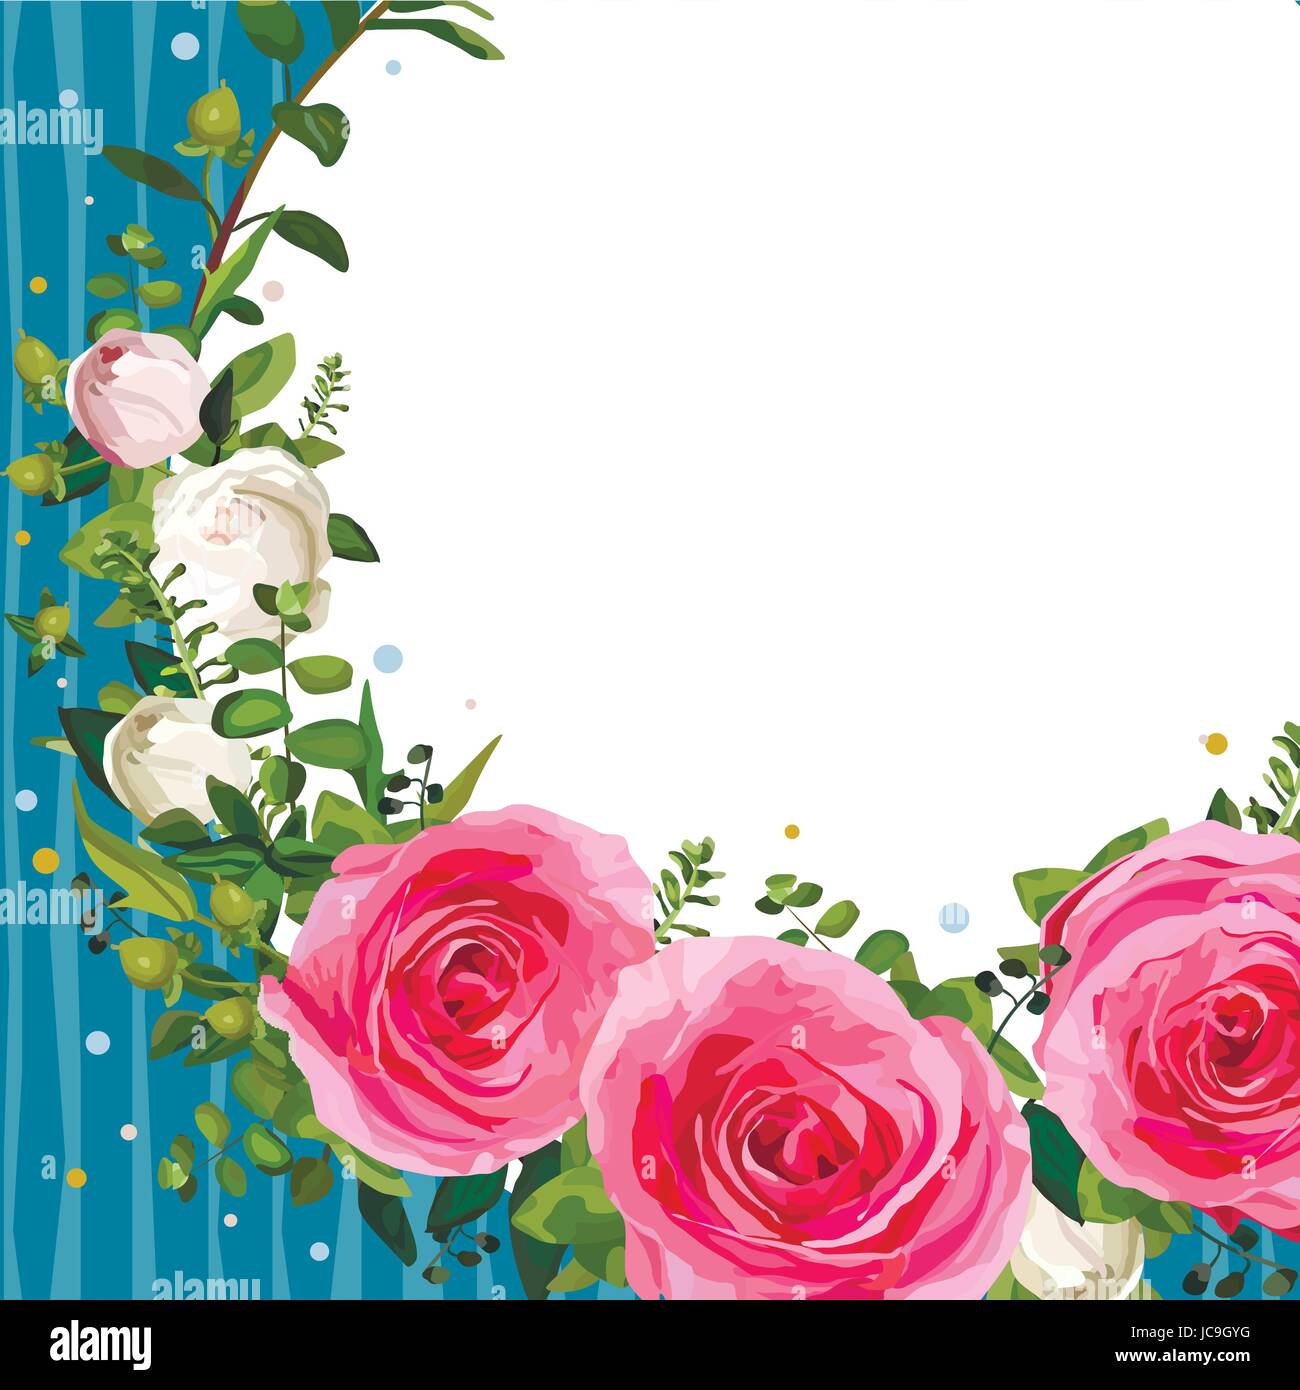 Blume rosa Rosenblätter schönen schönen Frühling Sommer Bouquet Vektor-Illustration. Draufsicht Quadrat feine elegante Aquarell Design weißen Hintergrund sa Stock Vektor